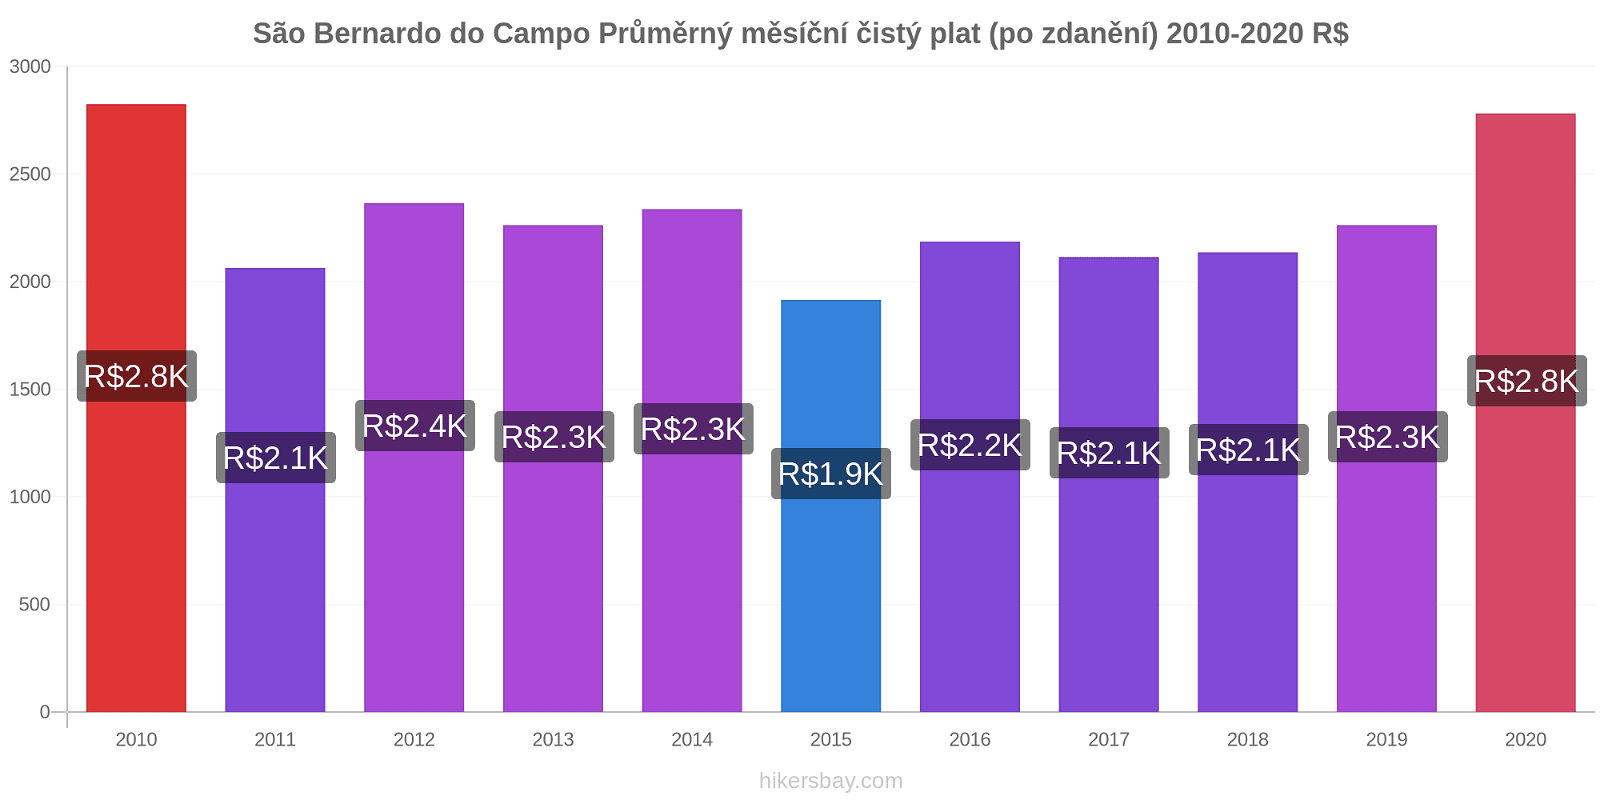 São Bernardo do Campo změny cen Průměrný měsíční čistý plat (po zdanění) hikersbay.com